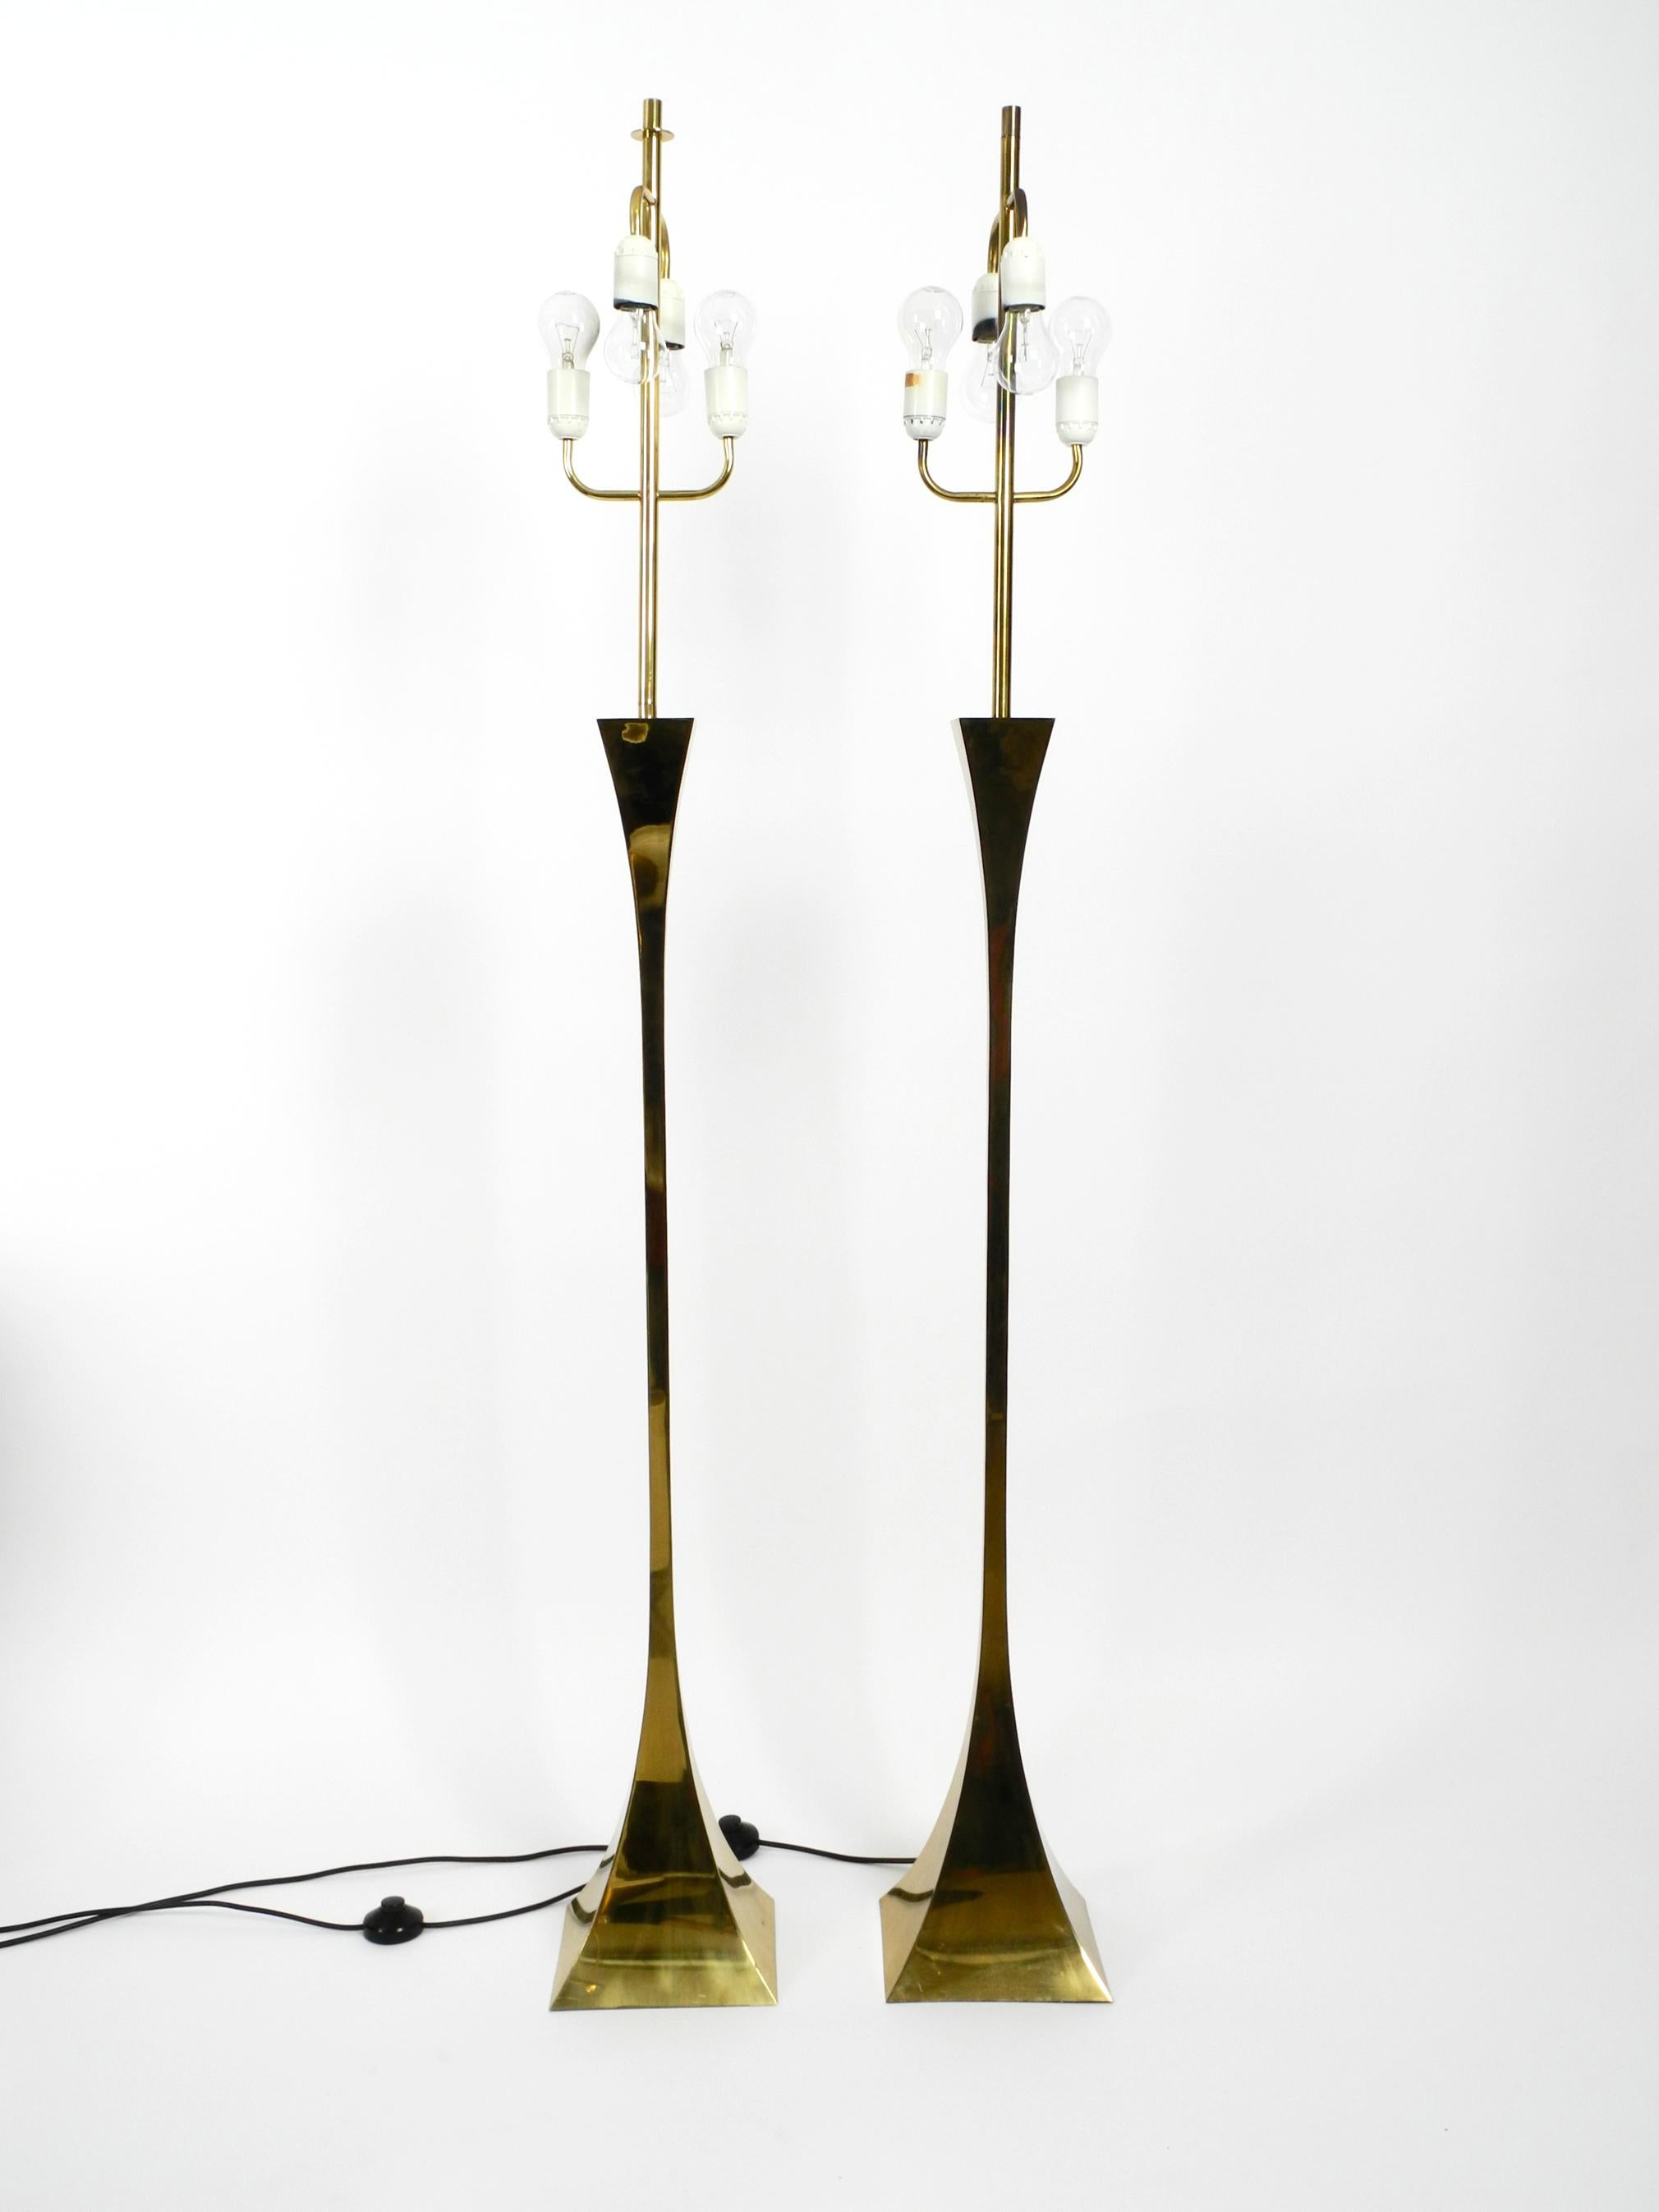 Schönes, seltenes Paar Stehlampen aus Messing aus den 1970er Jahren.
Entworfen von Tonello und Montagna Grillo für High Society.
Hergestellt in Italien. Tolles, sehr elegantes italienisches Design im originalen Vintage-Zustand.
Sockel und Stange